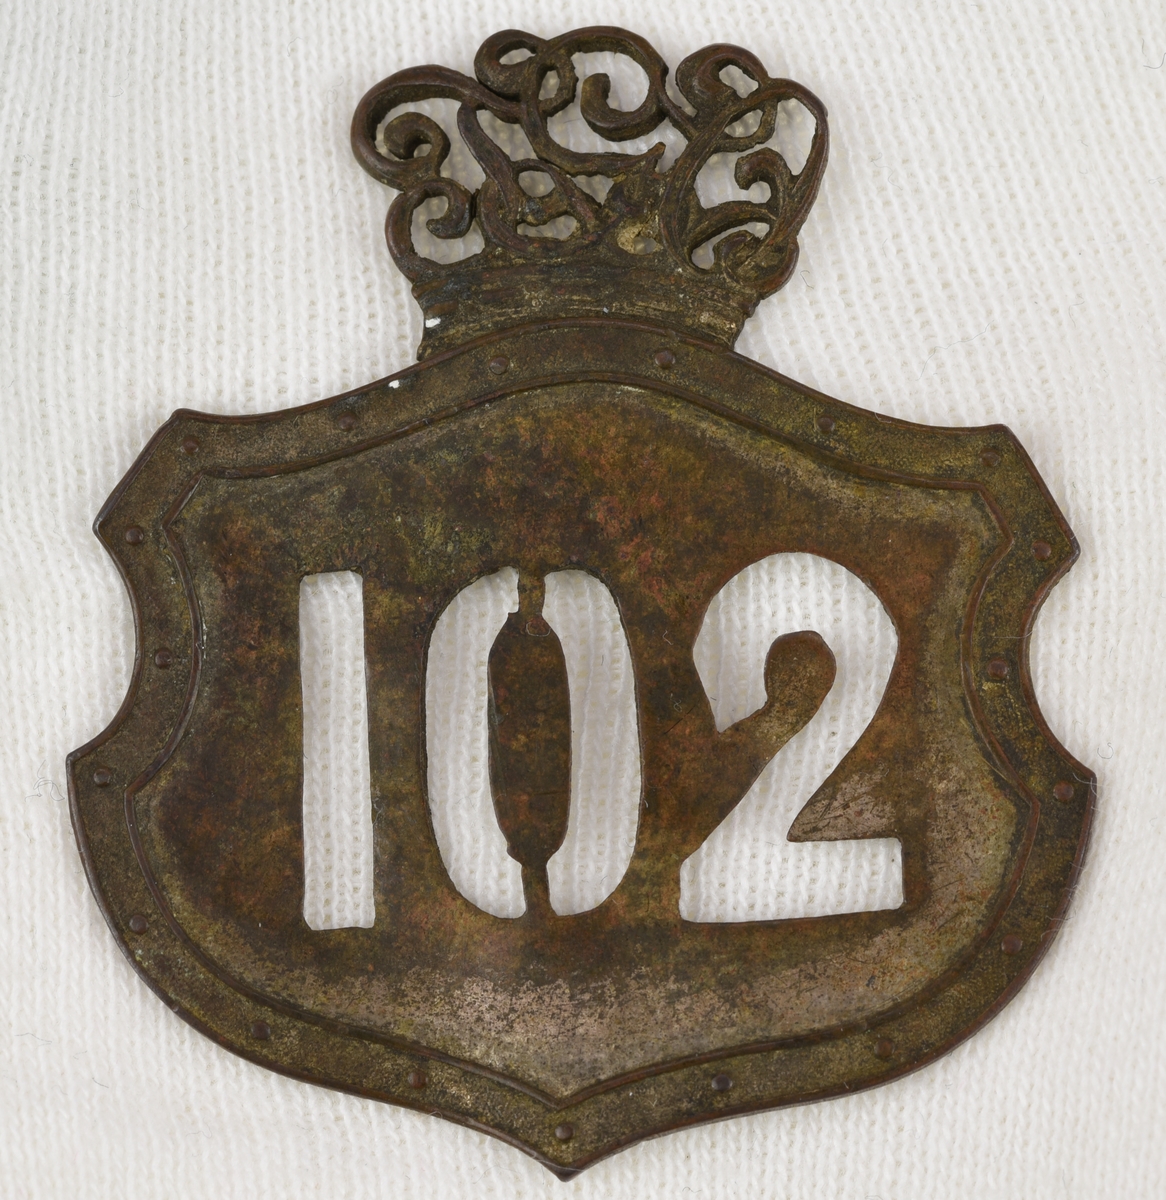 Stansad banvaktsplåt av mässing i form av en krönt sköld med en prickad bård. Siffrorna "102" är utstansade och kronan bildas av "TGO" i rikt ornerade bokstäver. Kronan är fastlödd mot märkets baksida. På baksidan syns spår av avbrutna fästnålar.